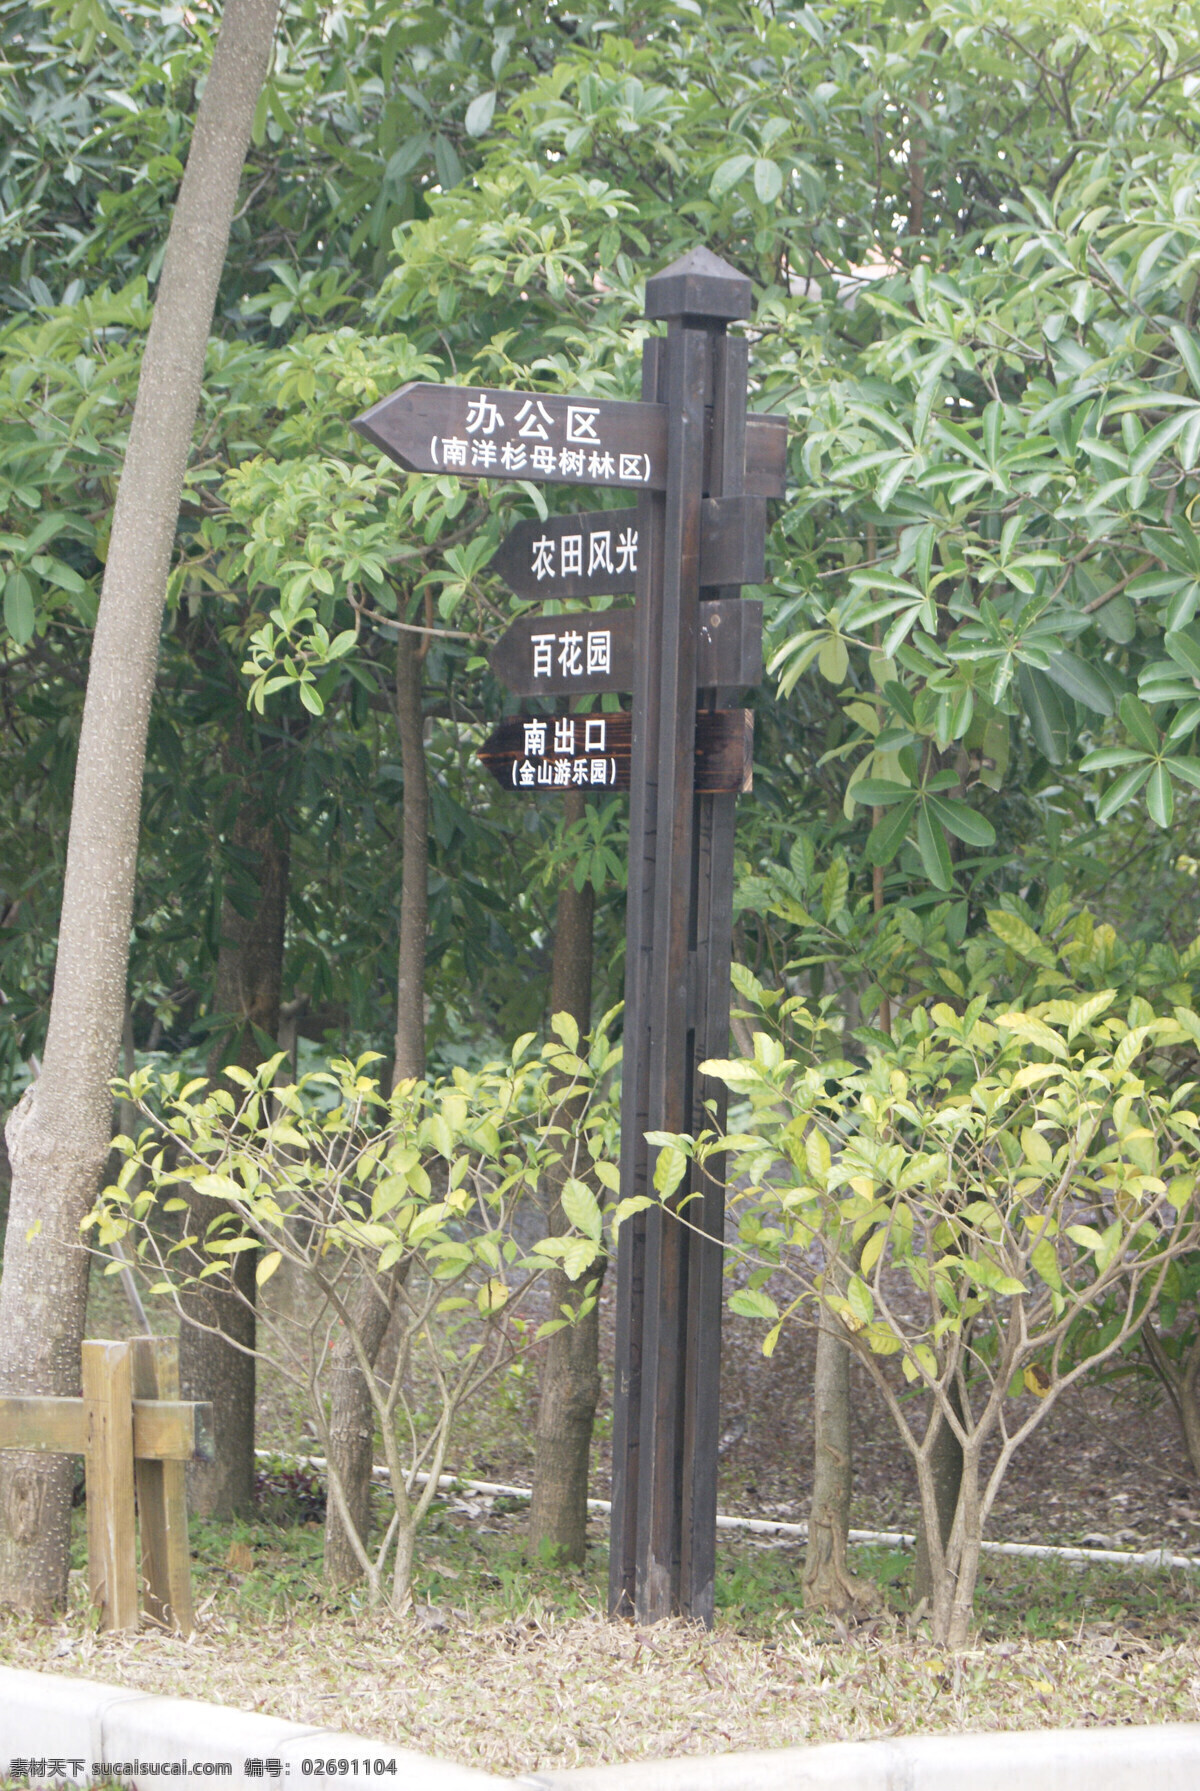 公园 里 方向 牌 草地 建筑园林 树木 园林建筑 指示牌 木方向牌 阳江市 植物 psd源文件